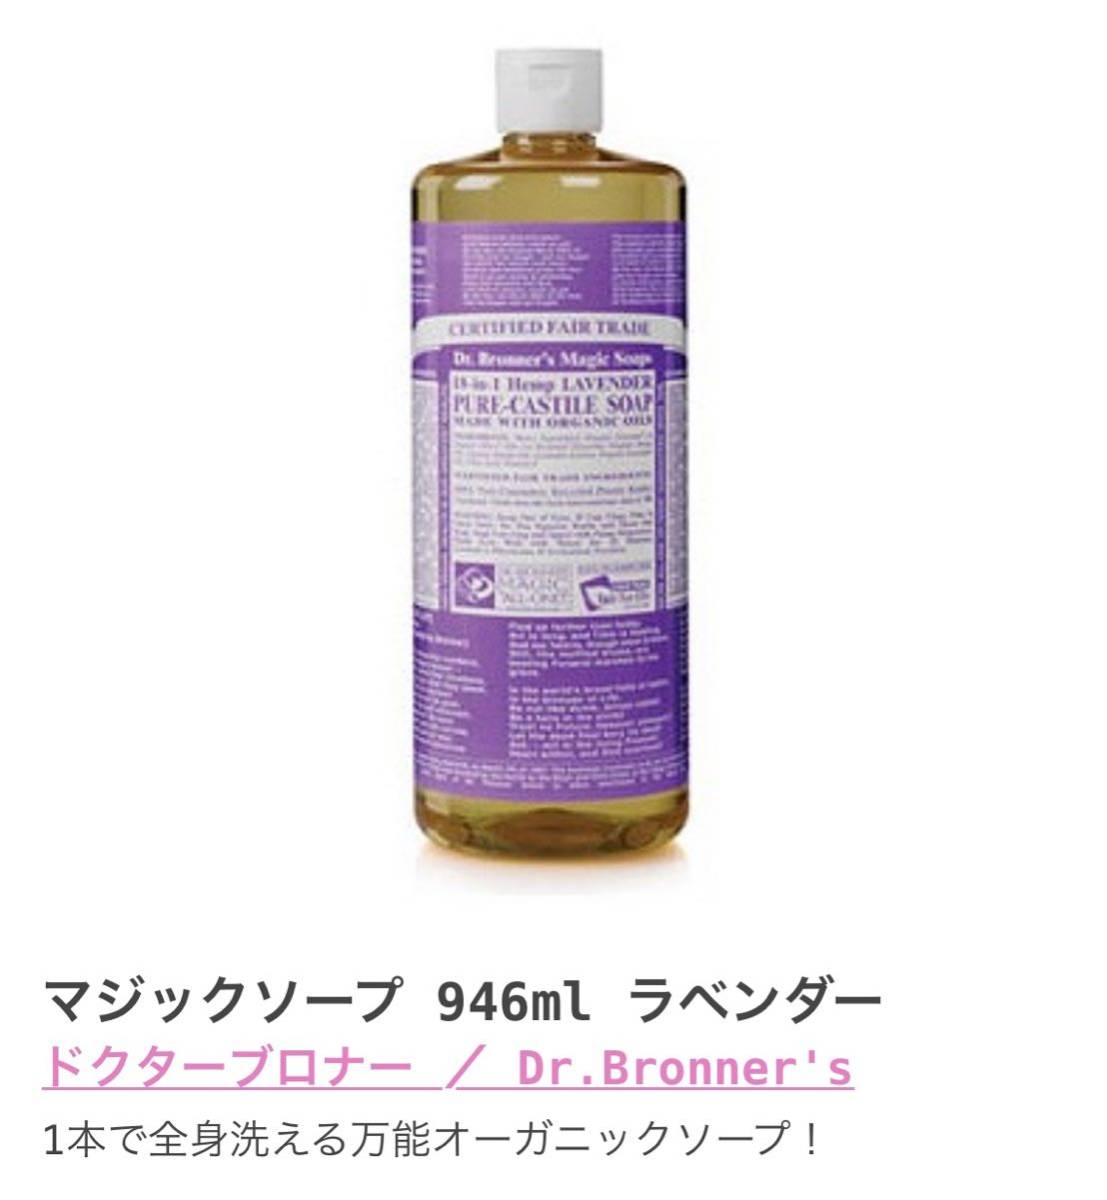 dokta-brona- Magic мыло (1 шт. лицо . корпус .... все в одном мыло )946ml 1 шт. LA лаванда органический макияж сбрасывание 